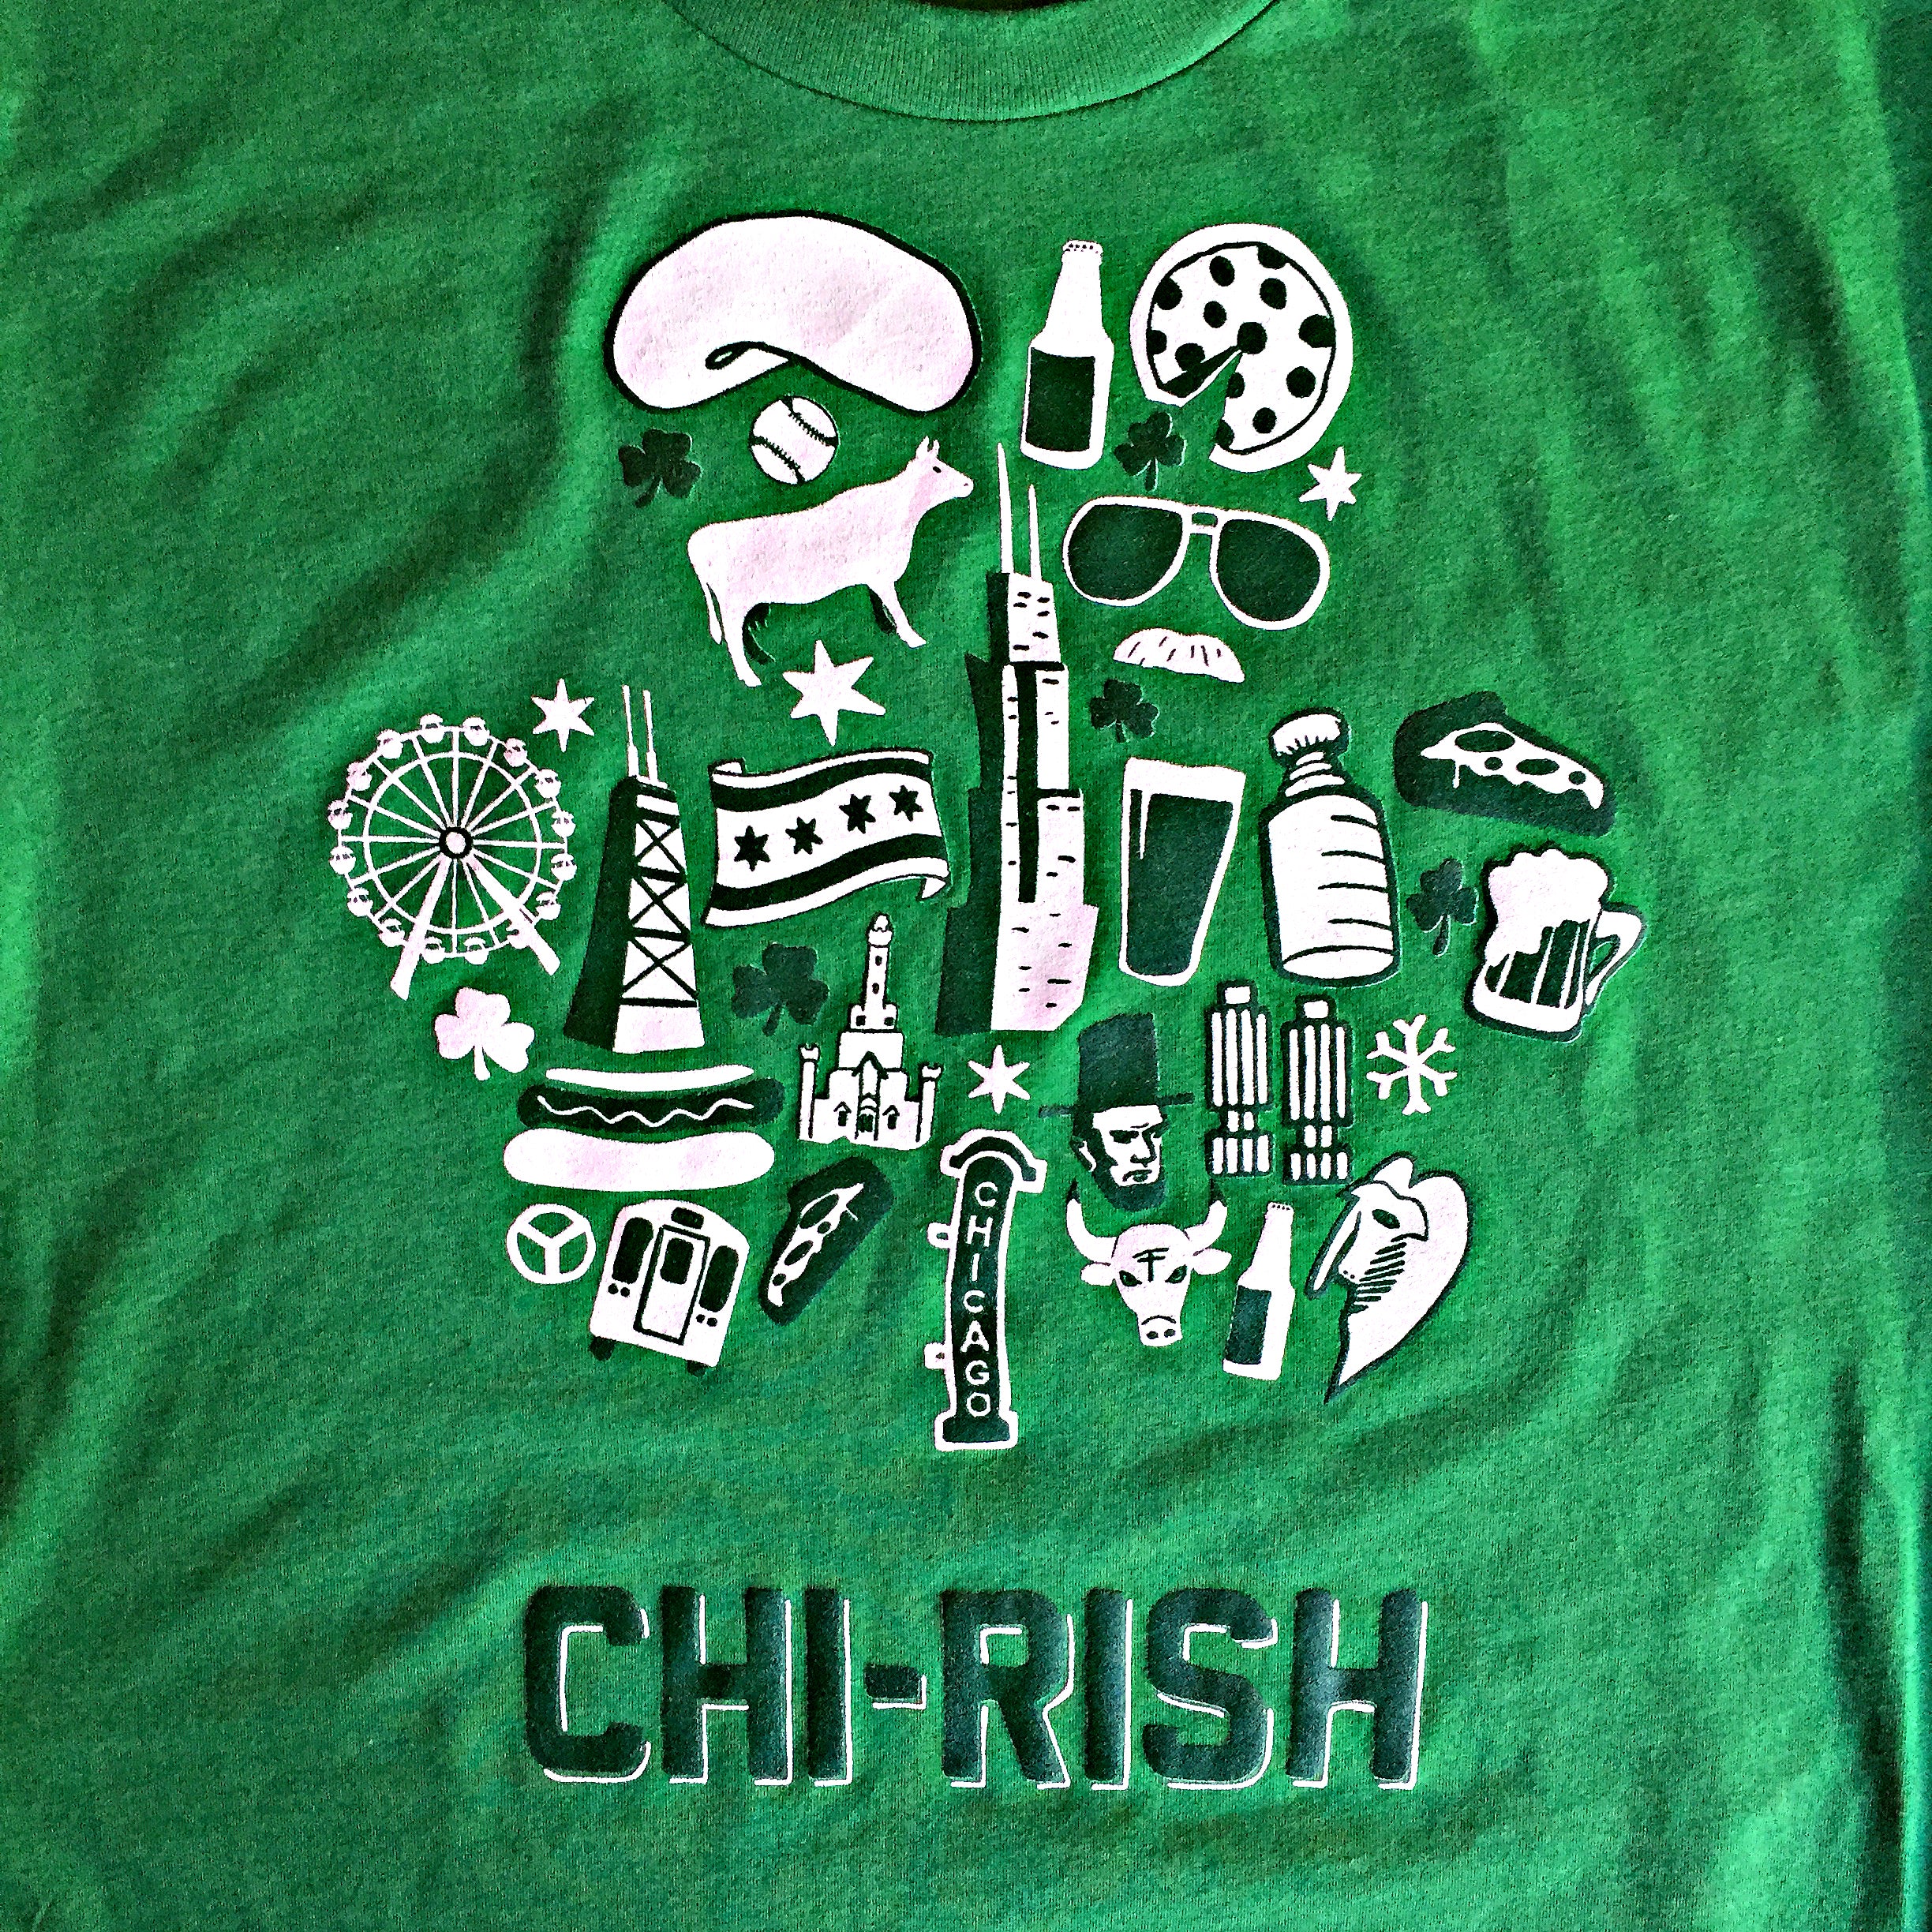 Chicago Irish T-Shirt